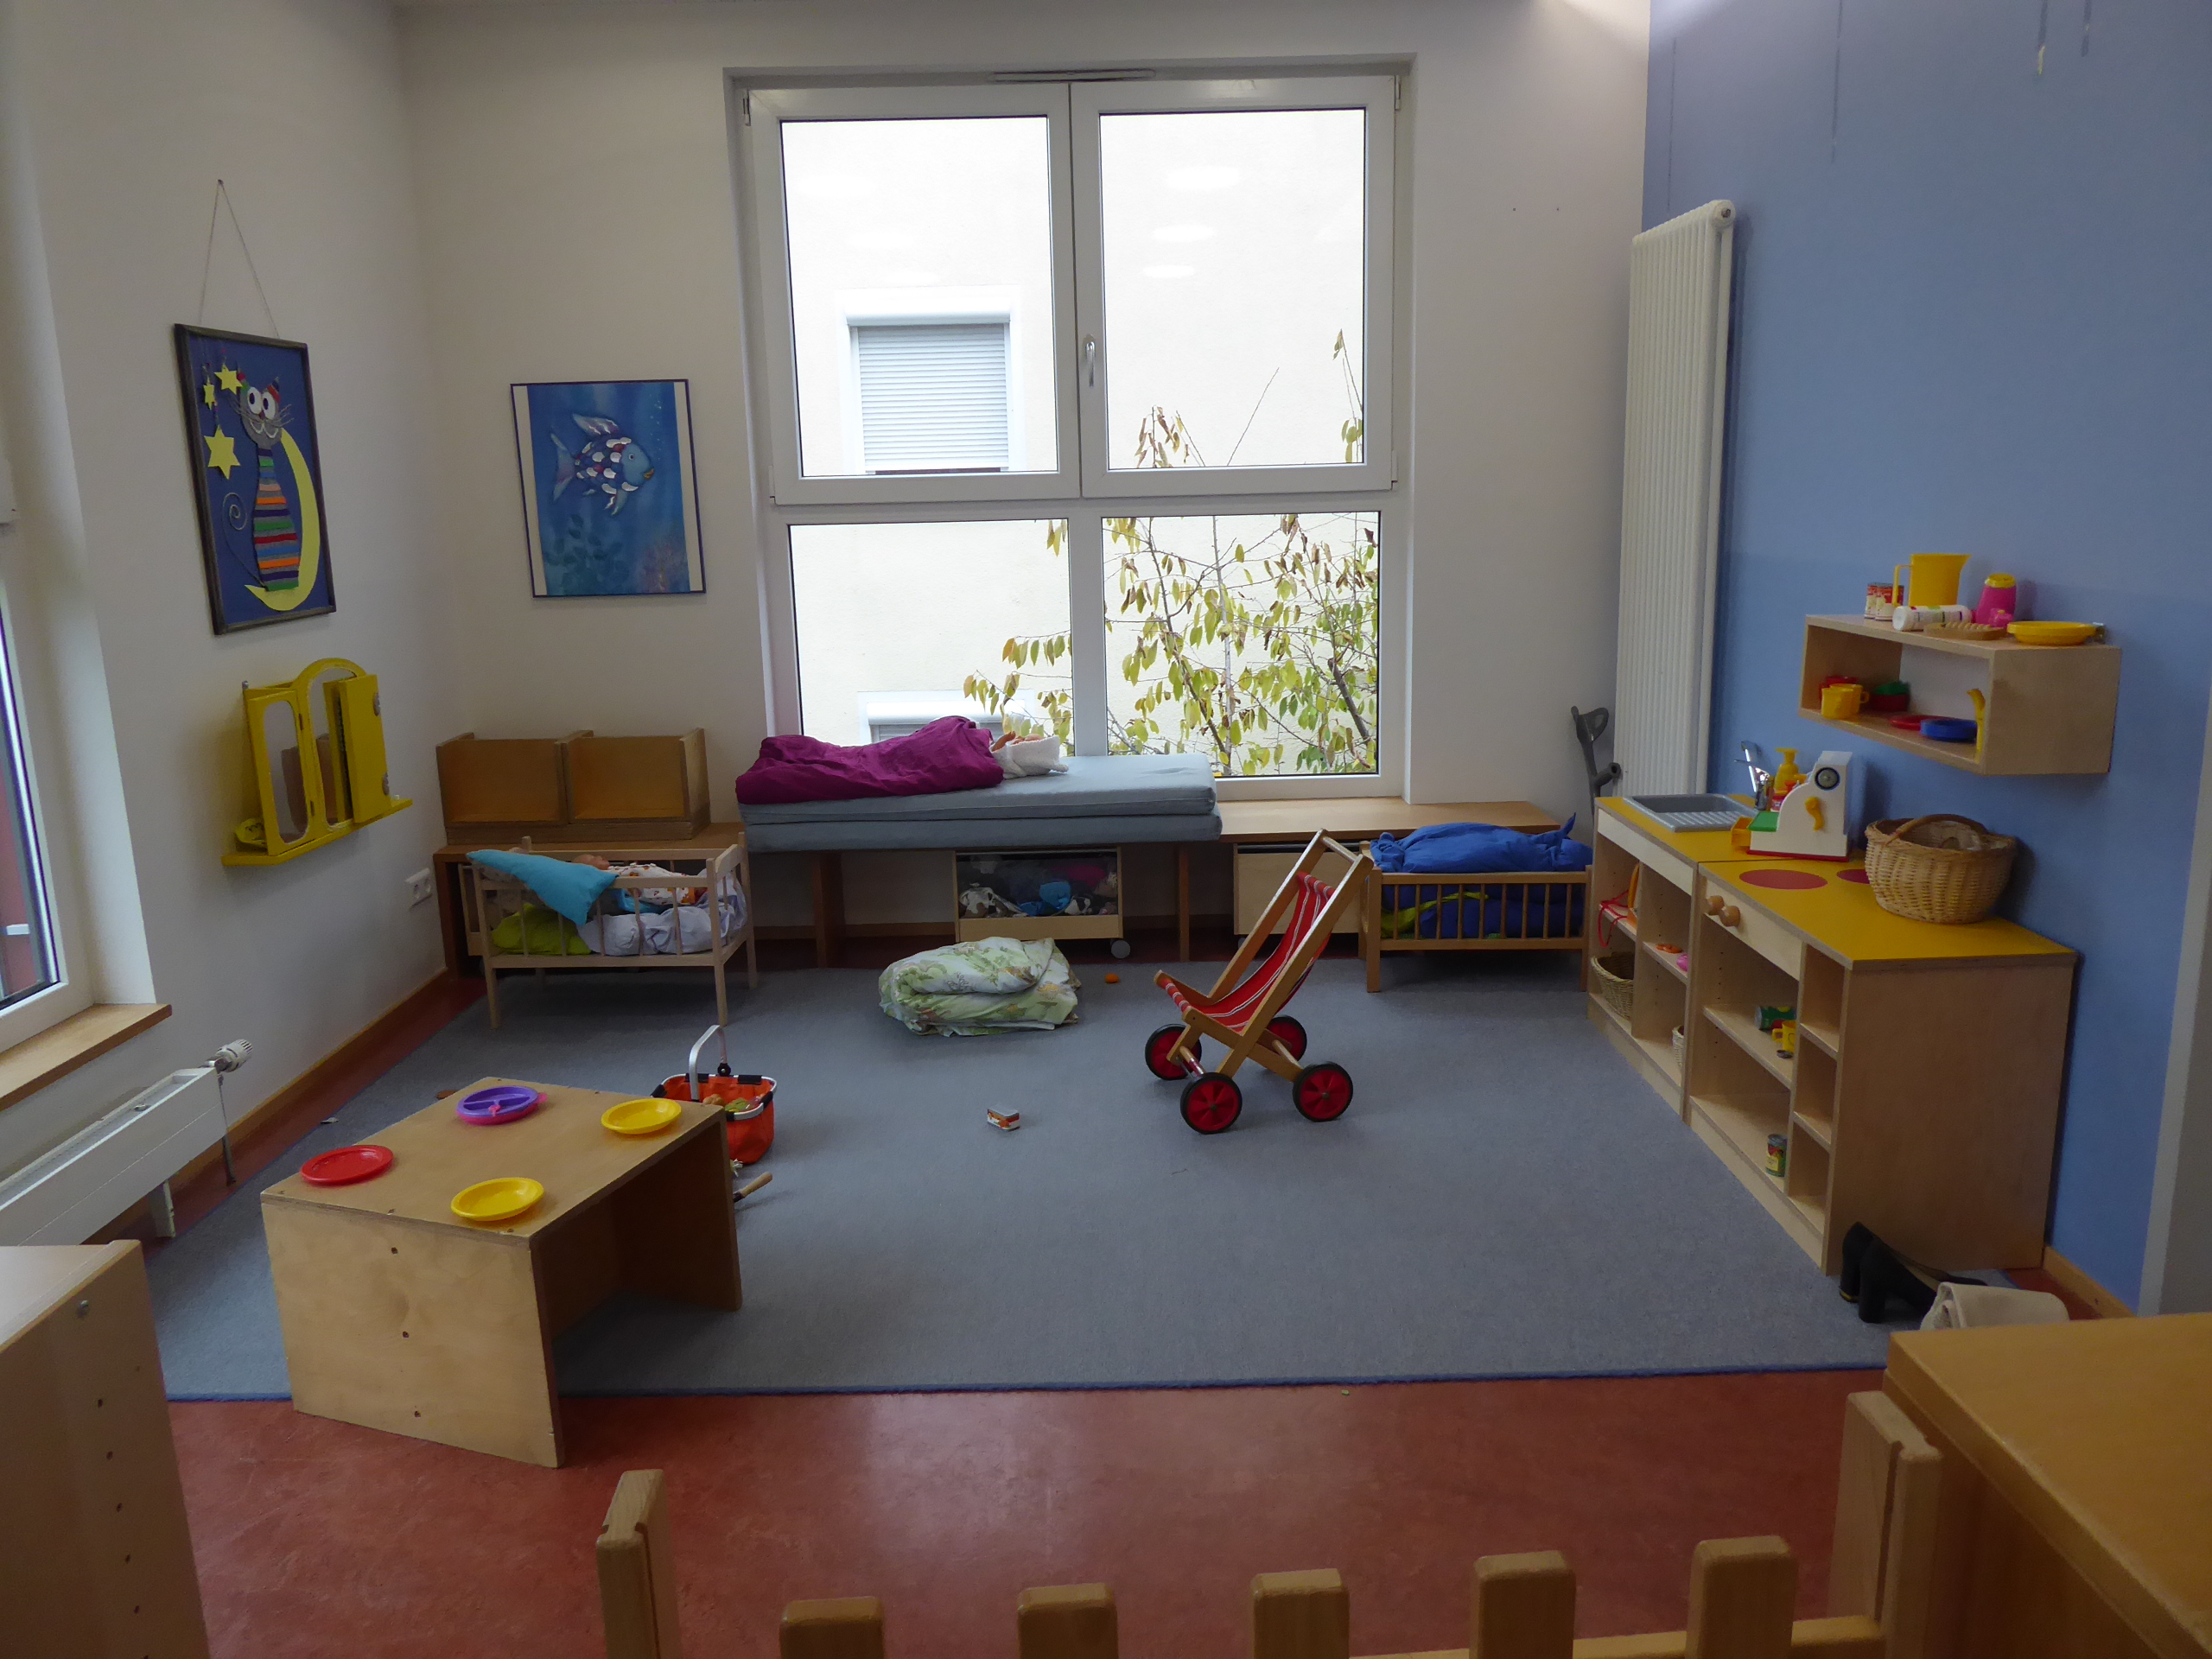 Das Bild zeigt den Rollenspielbereich der Kindergartenkinder. Es gibt zwei Puppenbettchen, einen Kinderwagen und eine Kinderküche.